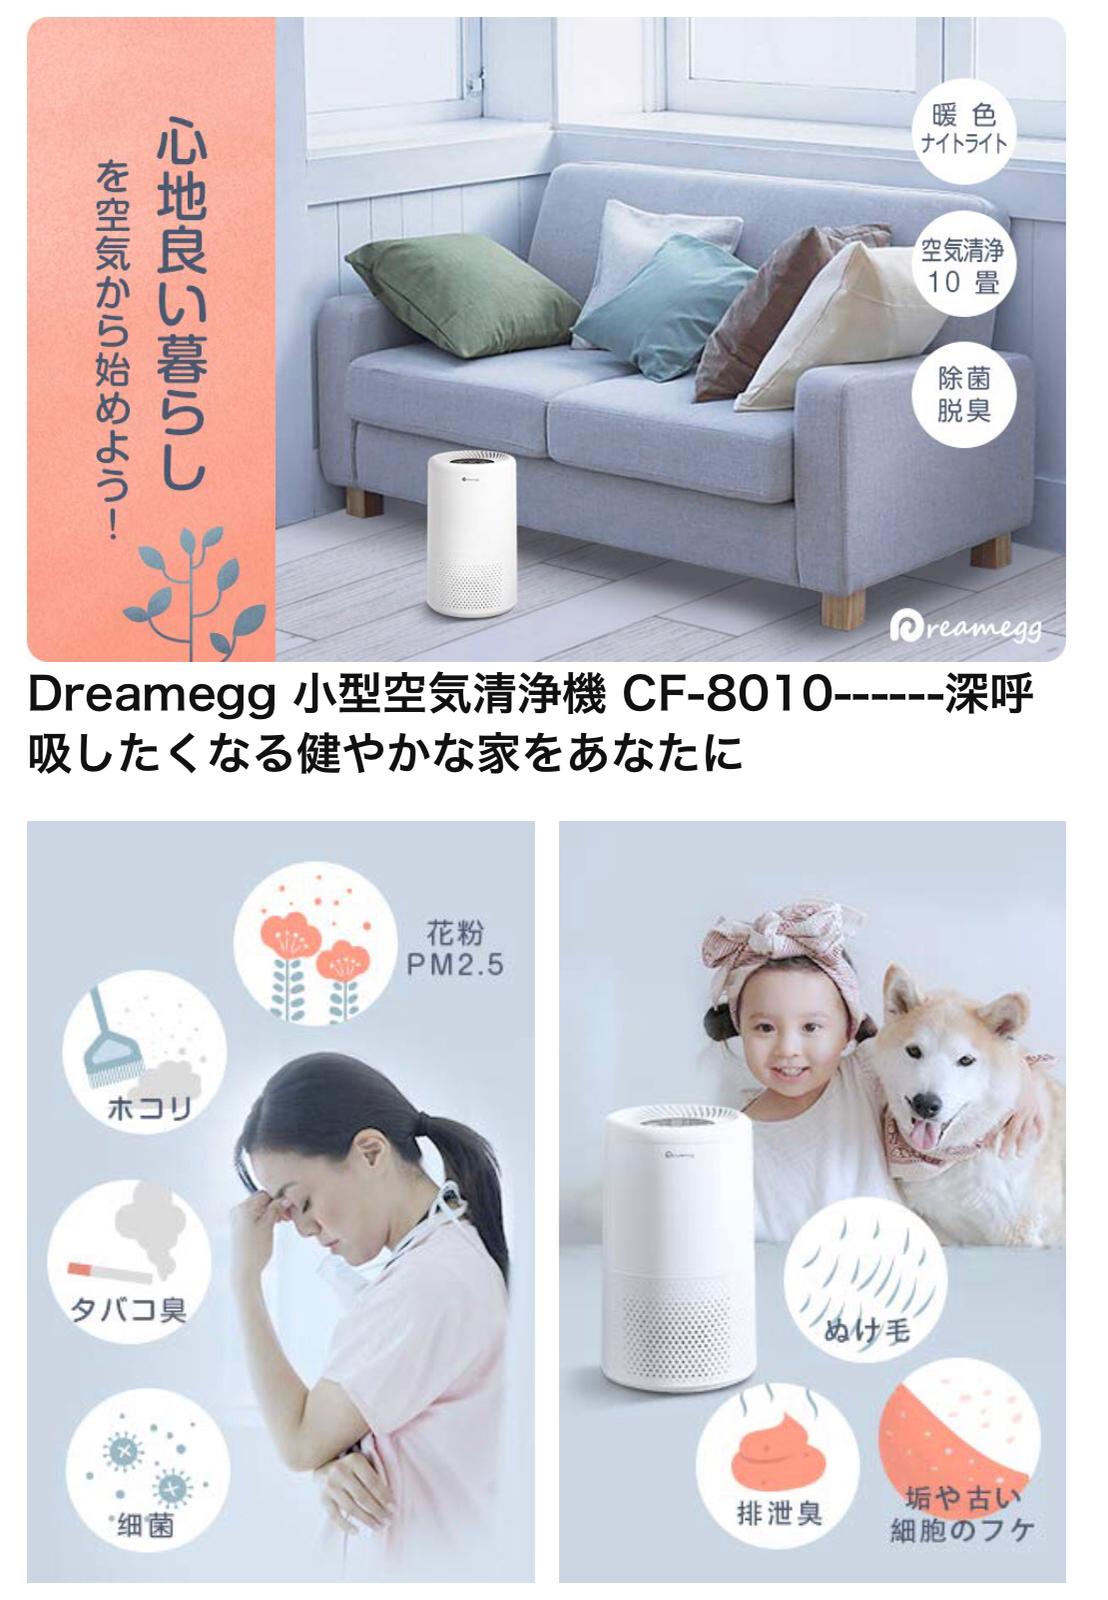 Dreamegg - 日本 DREAMEGG CF-8010 小型空氣清淨機【香港行貨】